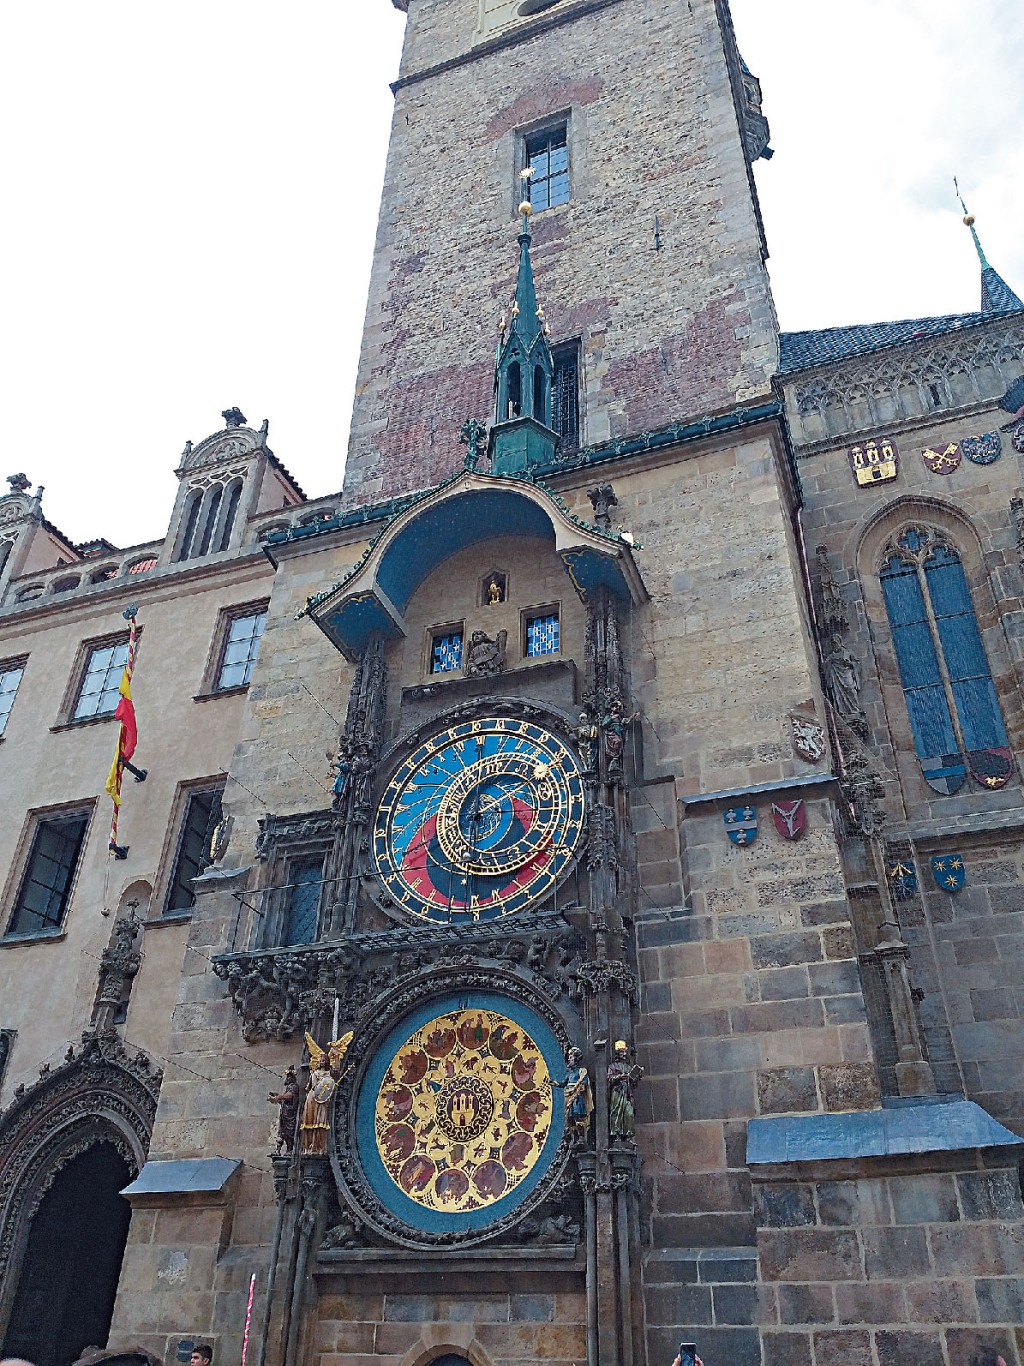 坐落於布拉格老城廣場的天文鐘建於中世紀的1410年，距今超過600年，每逢整點報時。